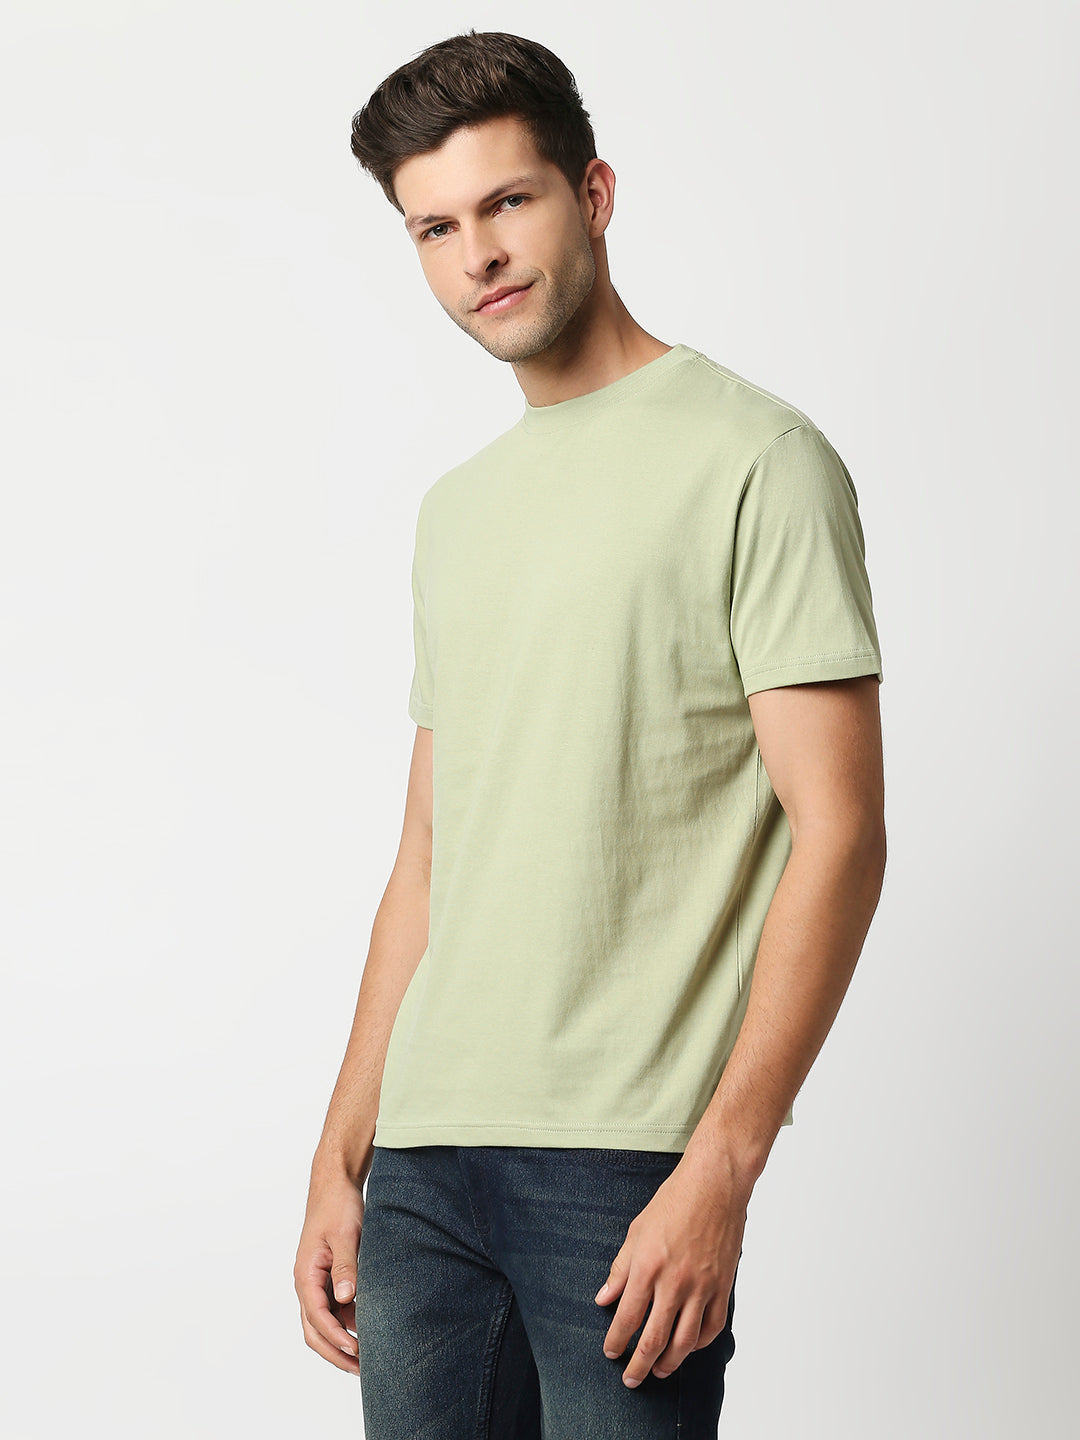 Buy Blamblack Men's Light Green Organic Regular T Shirt